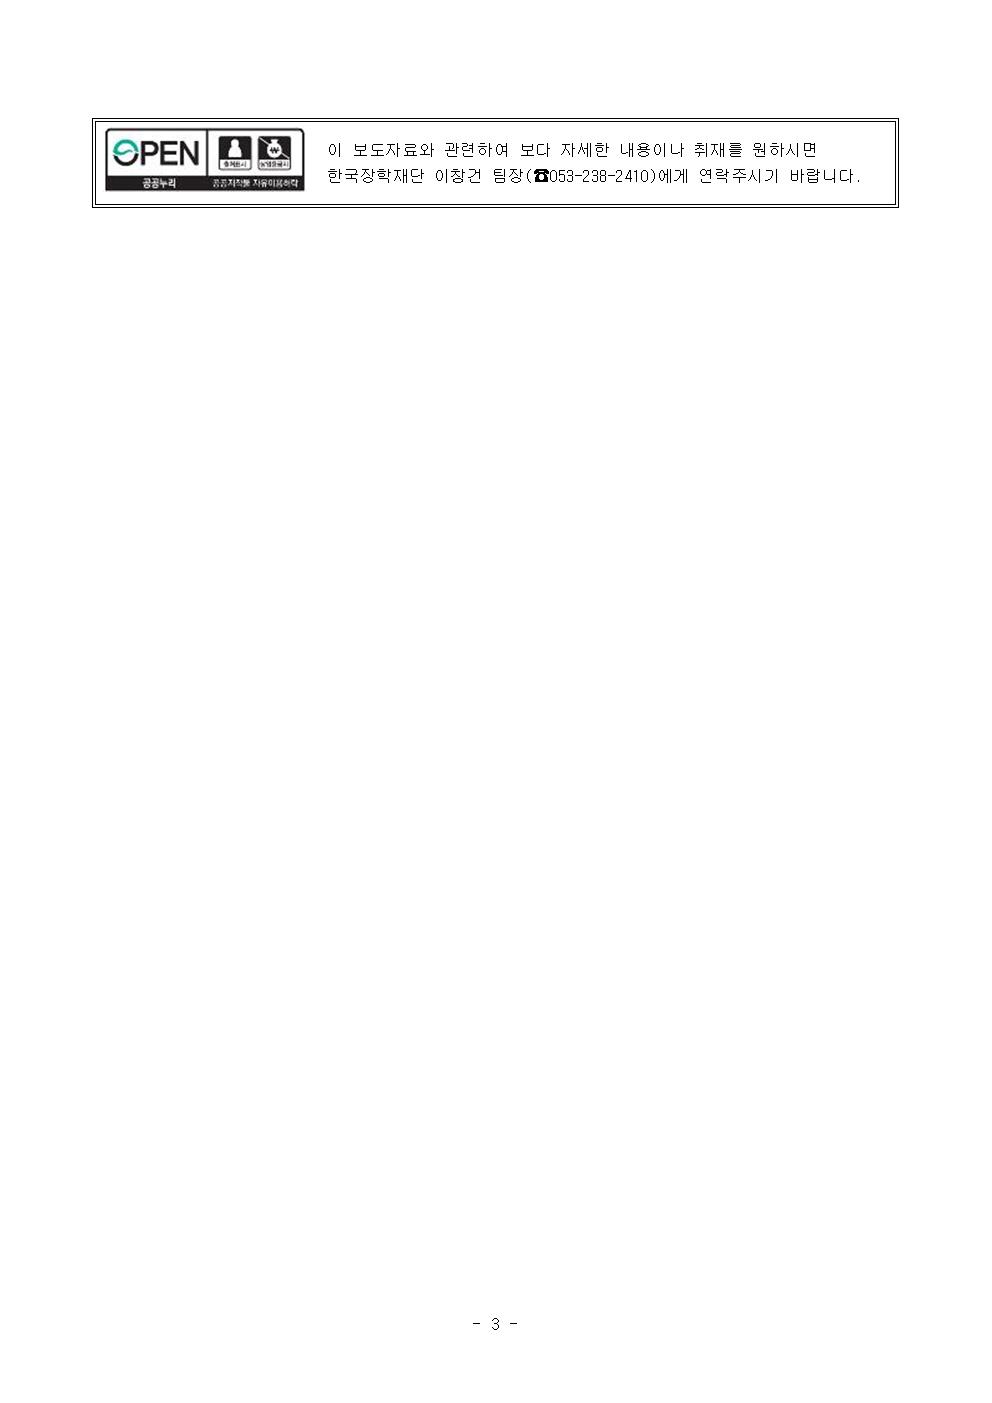 05-20(월)[보도자료] 한국장학재단-경상남도, 청년 장기연체자 대상 신용회복 지원사업을 위한 업무협약 체결003.jpg